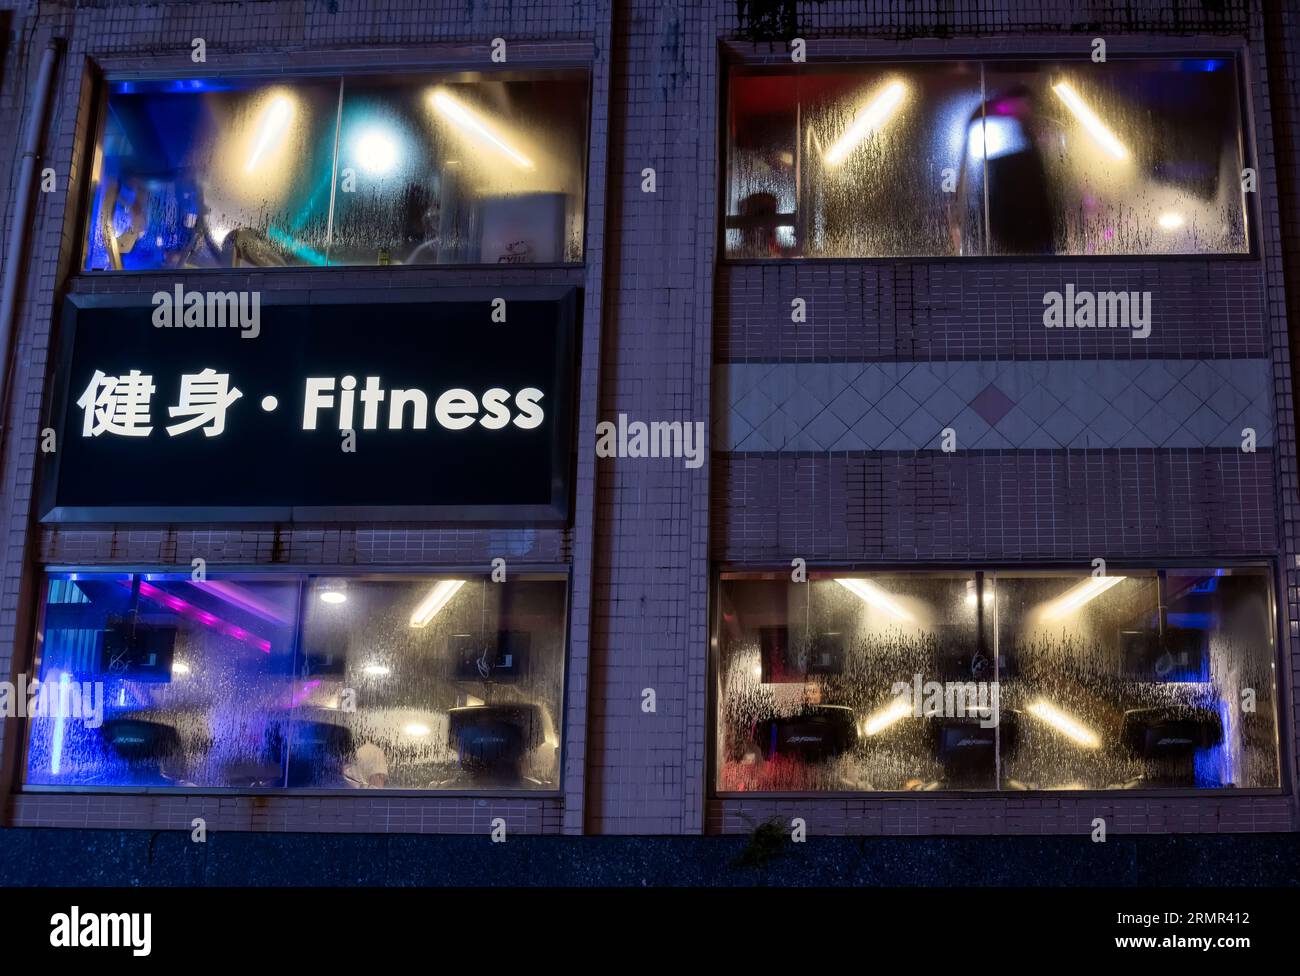 Gymnasium and fitness club, Hong Kong, China. Stock Photo